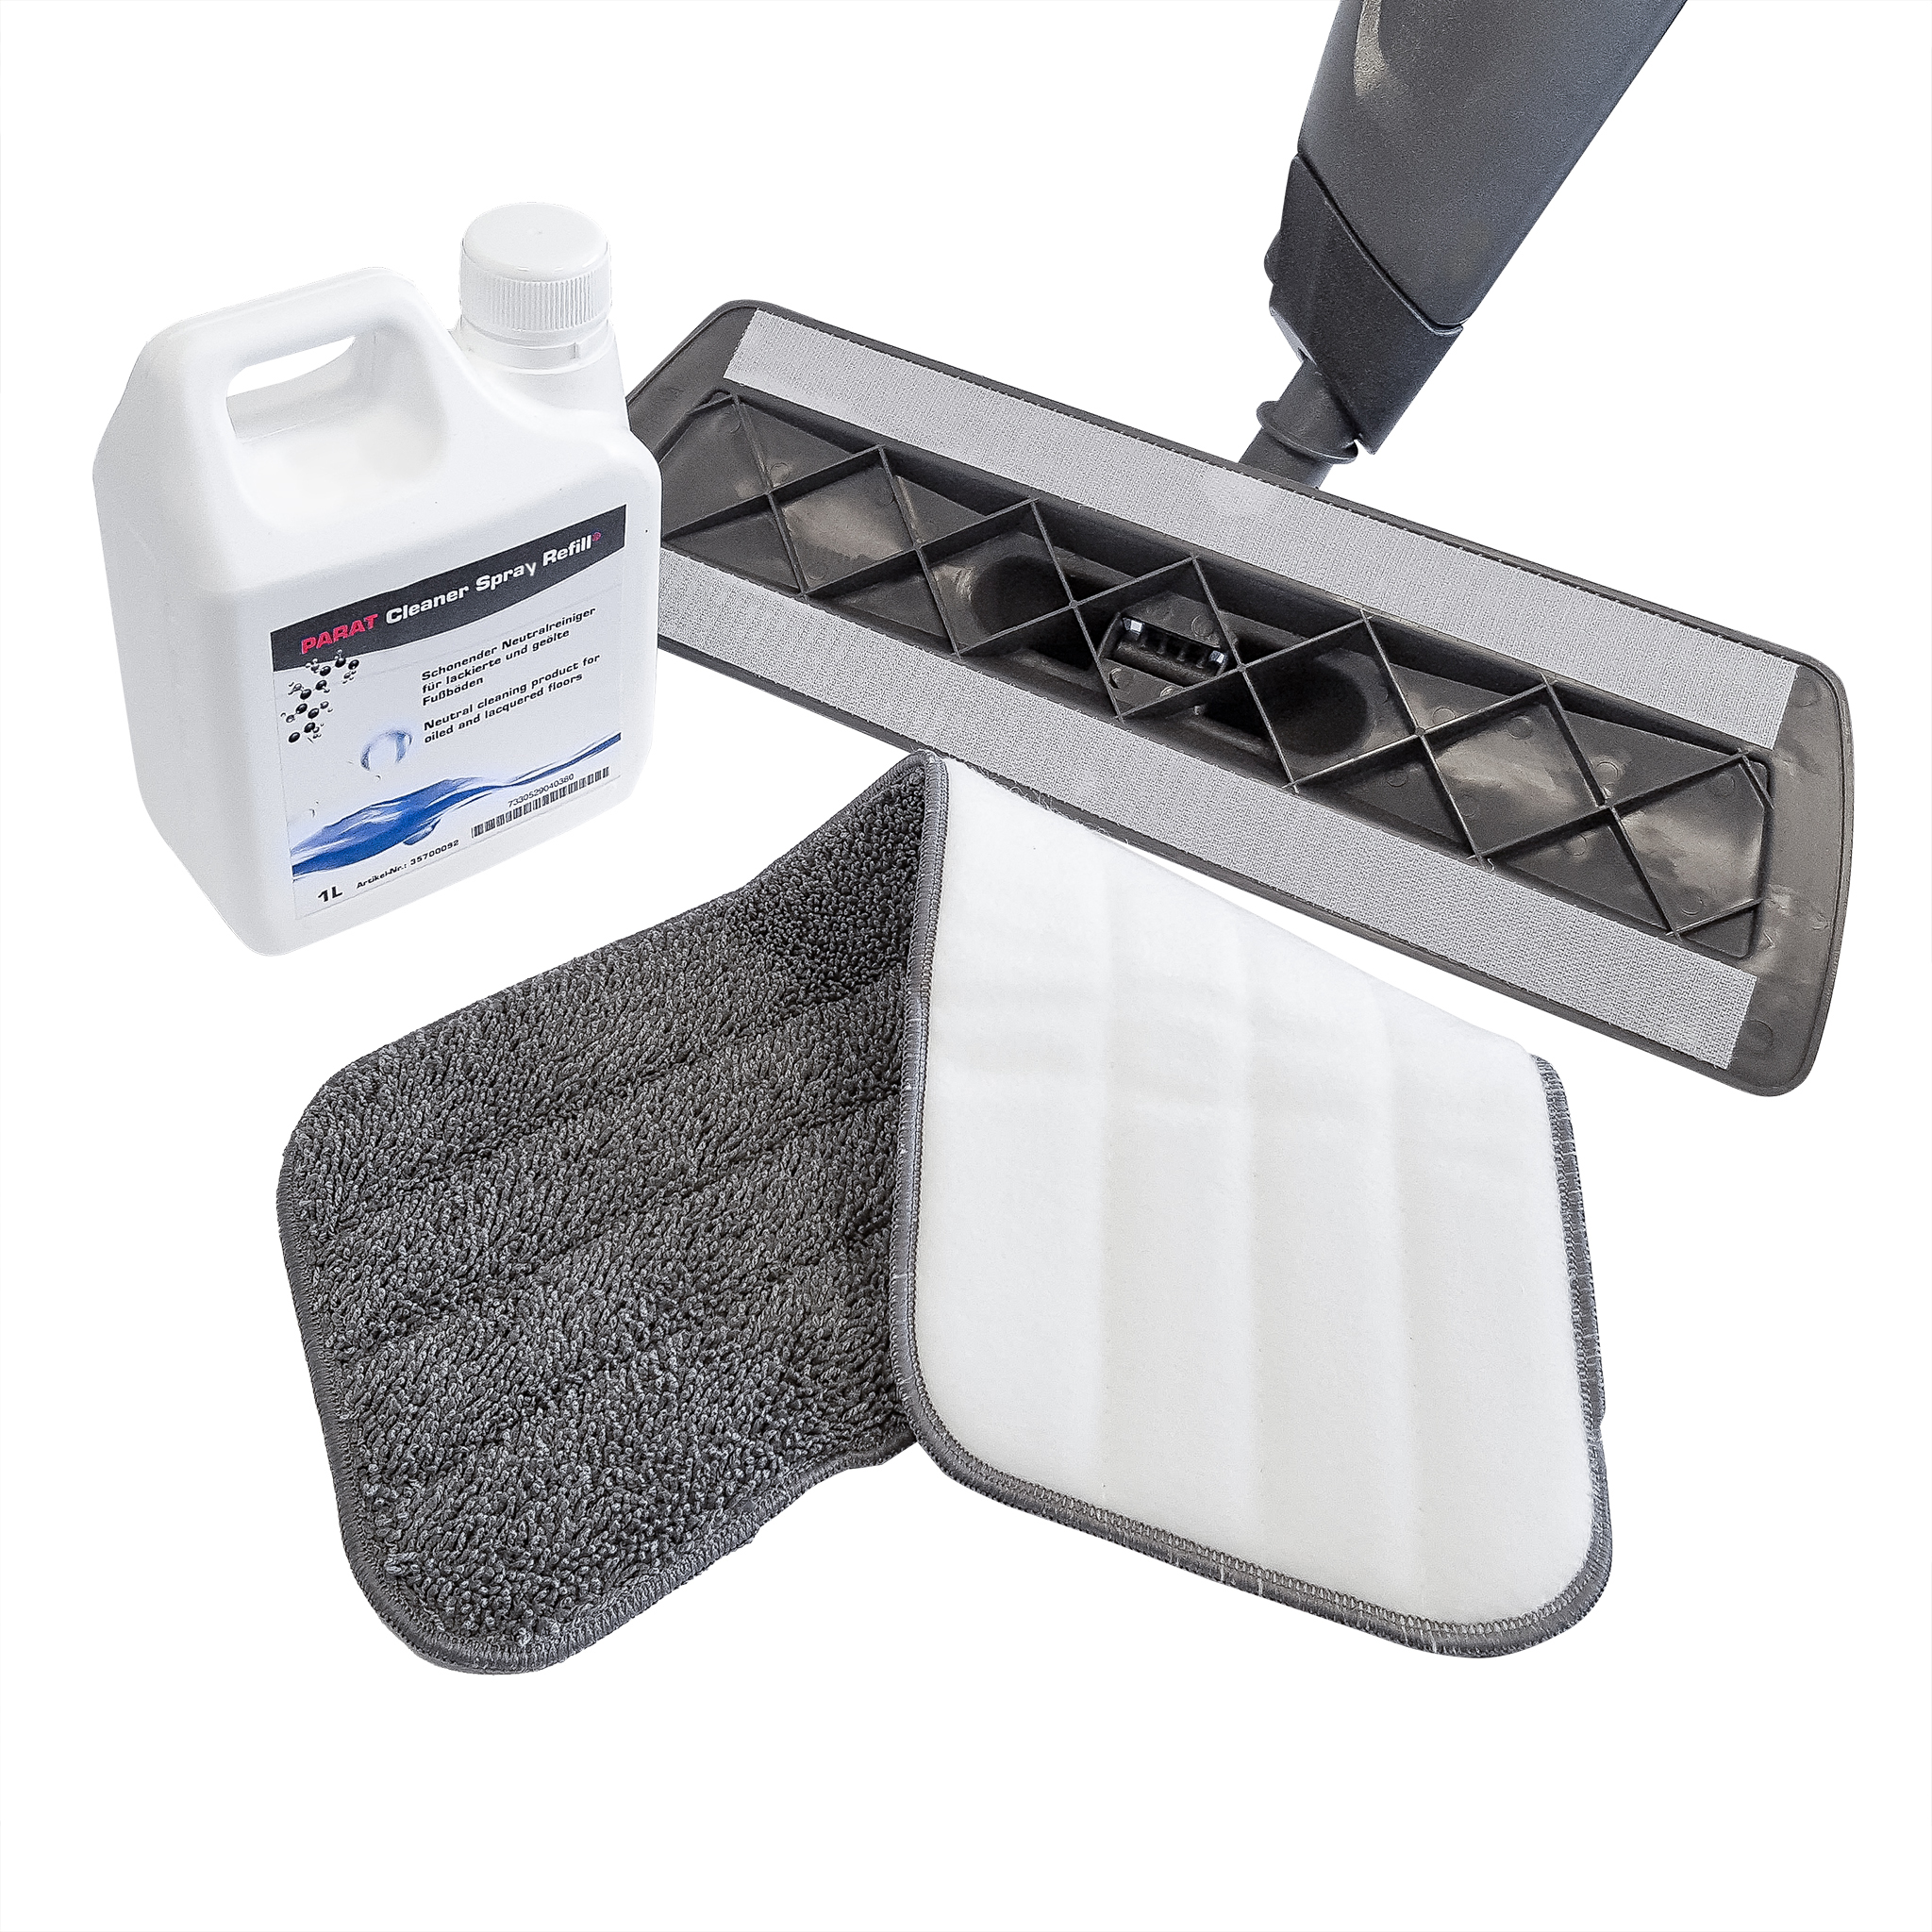 PARAT Spraymop Kit cleaning set